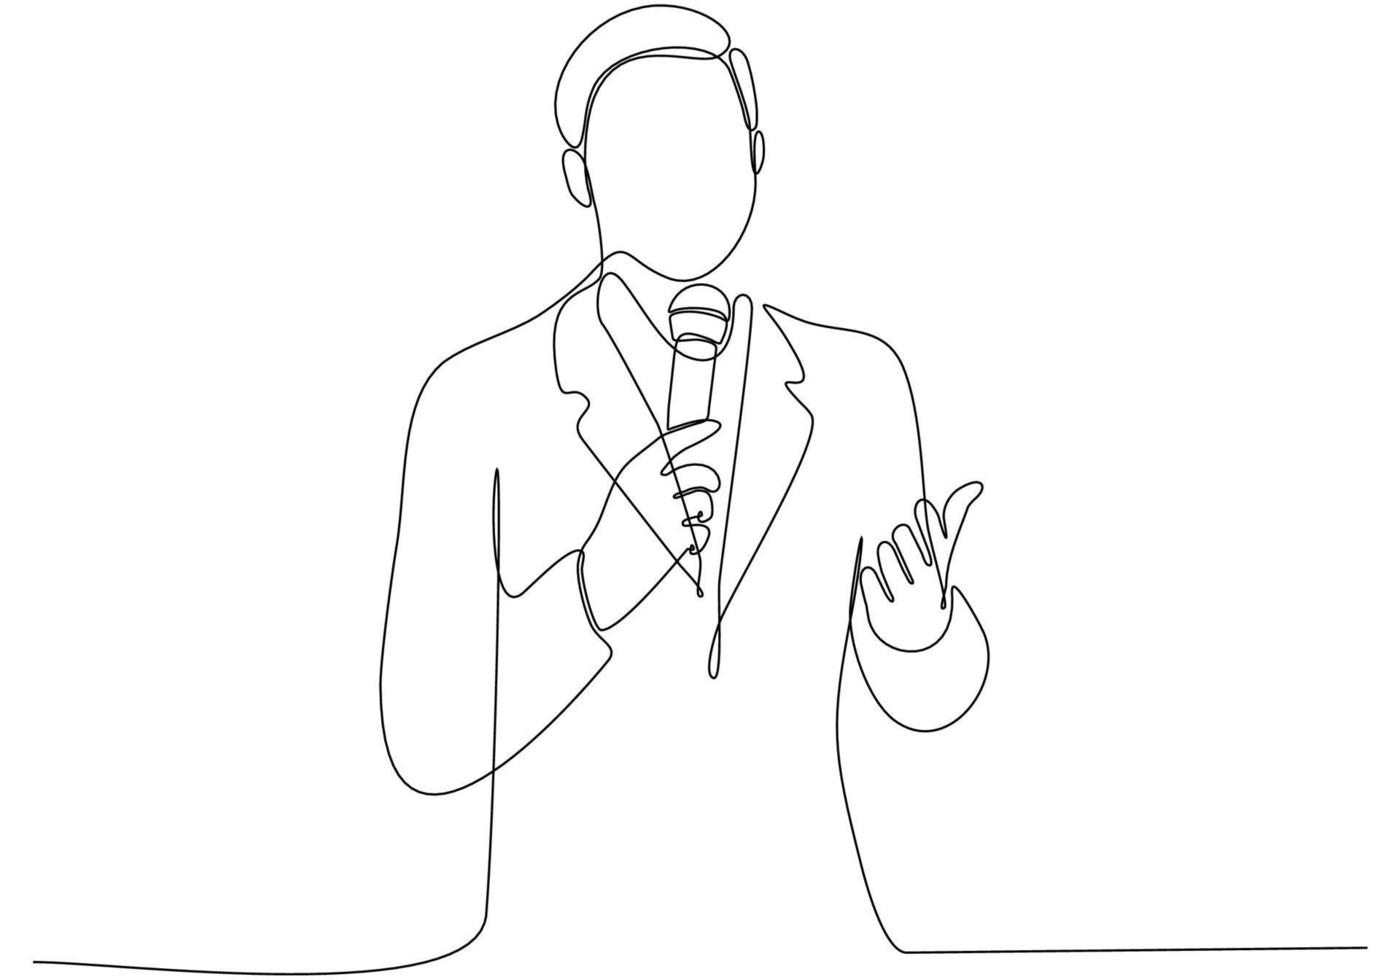 kontinuerlig linjeteckning av man som håller mikrofonen, journalist symbol vektorillustration vektor